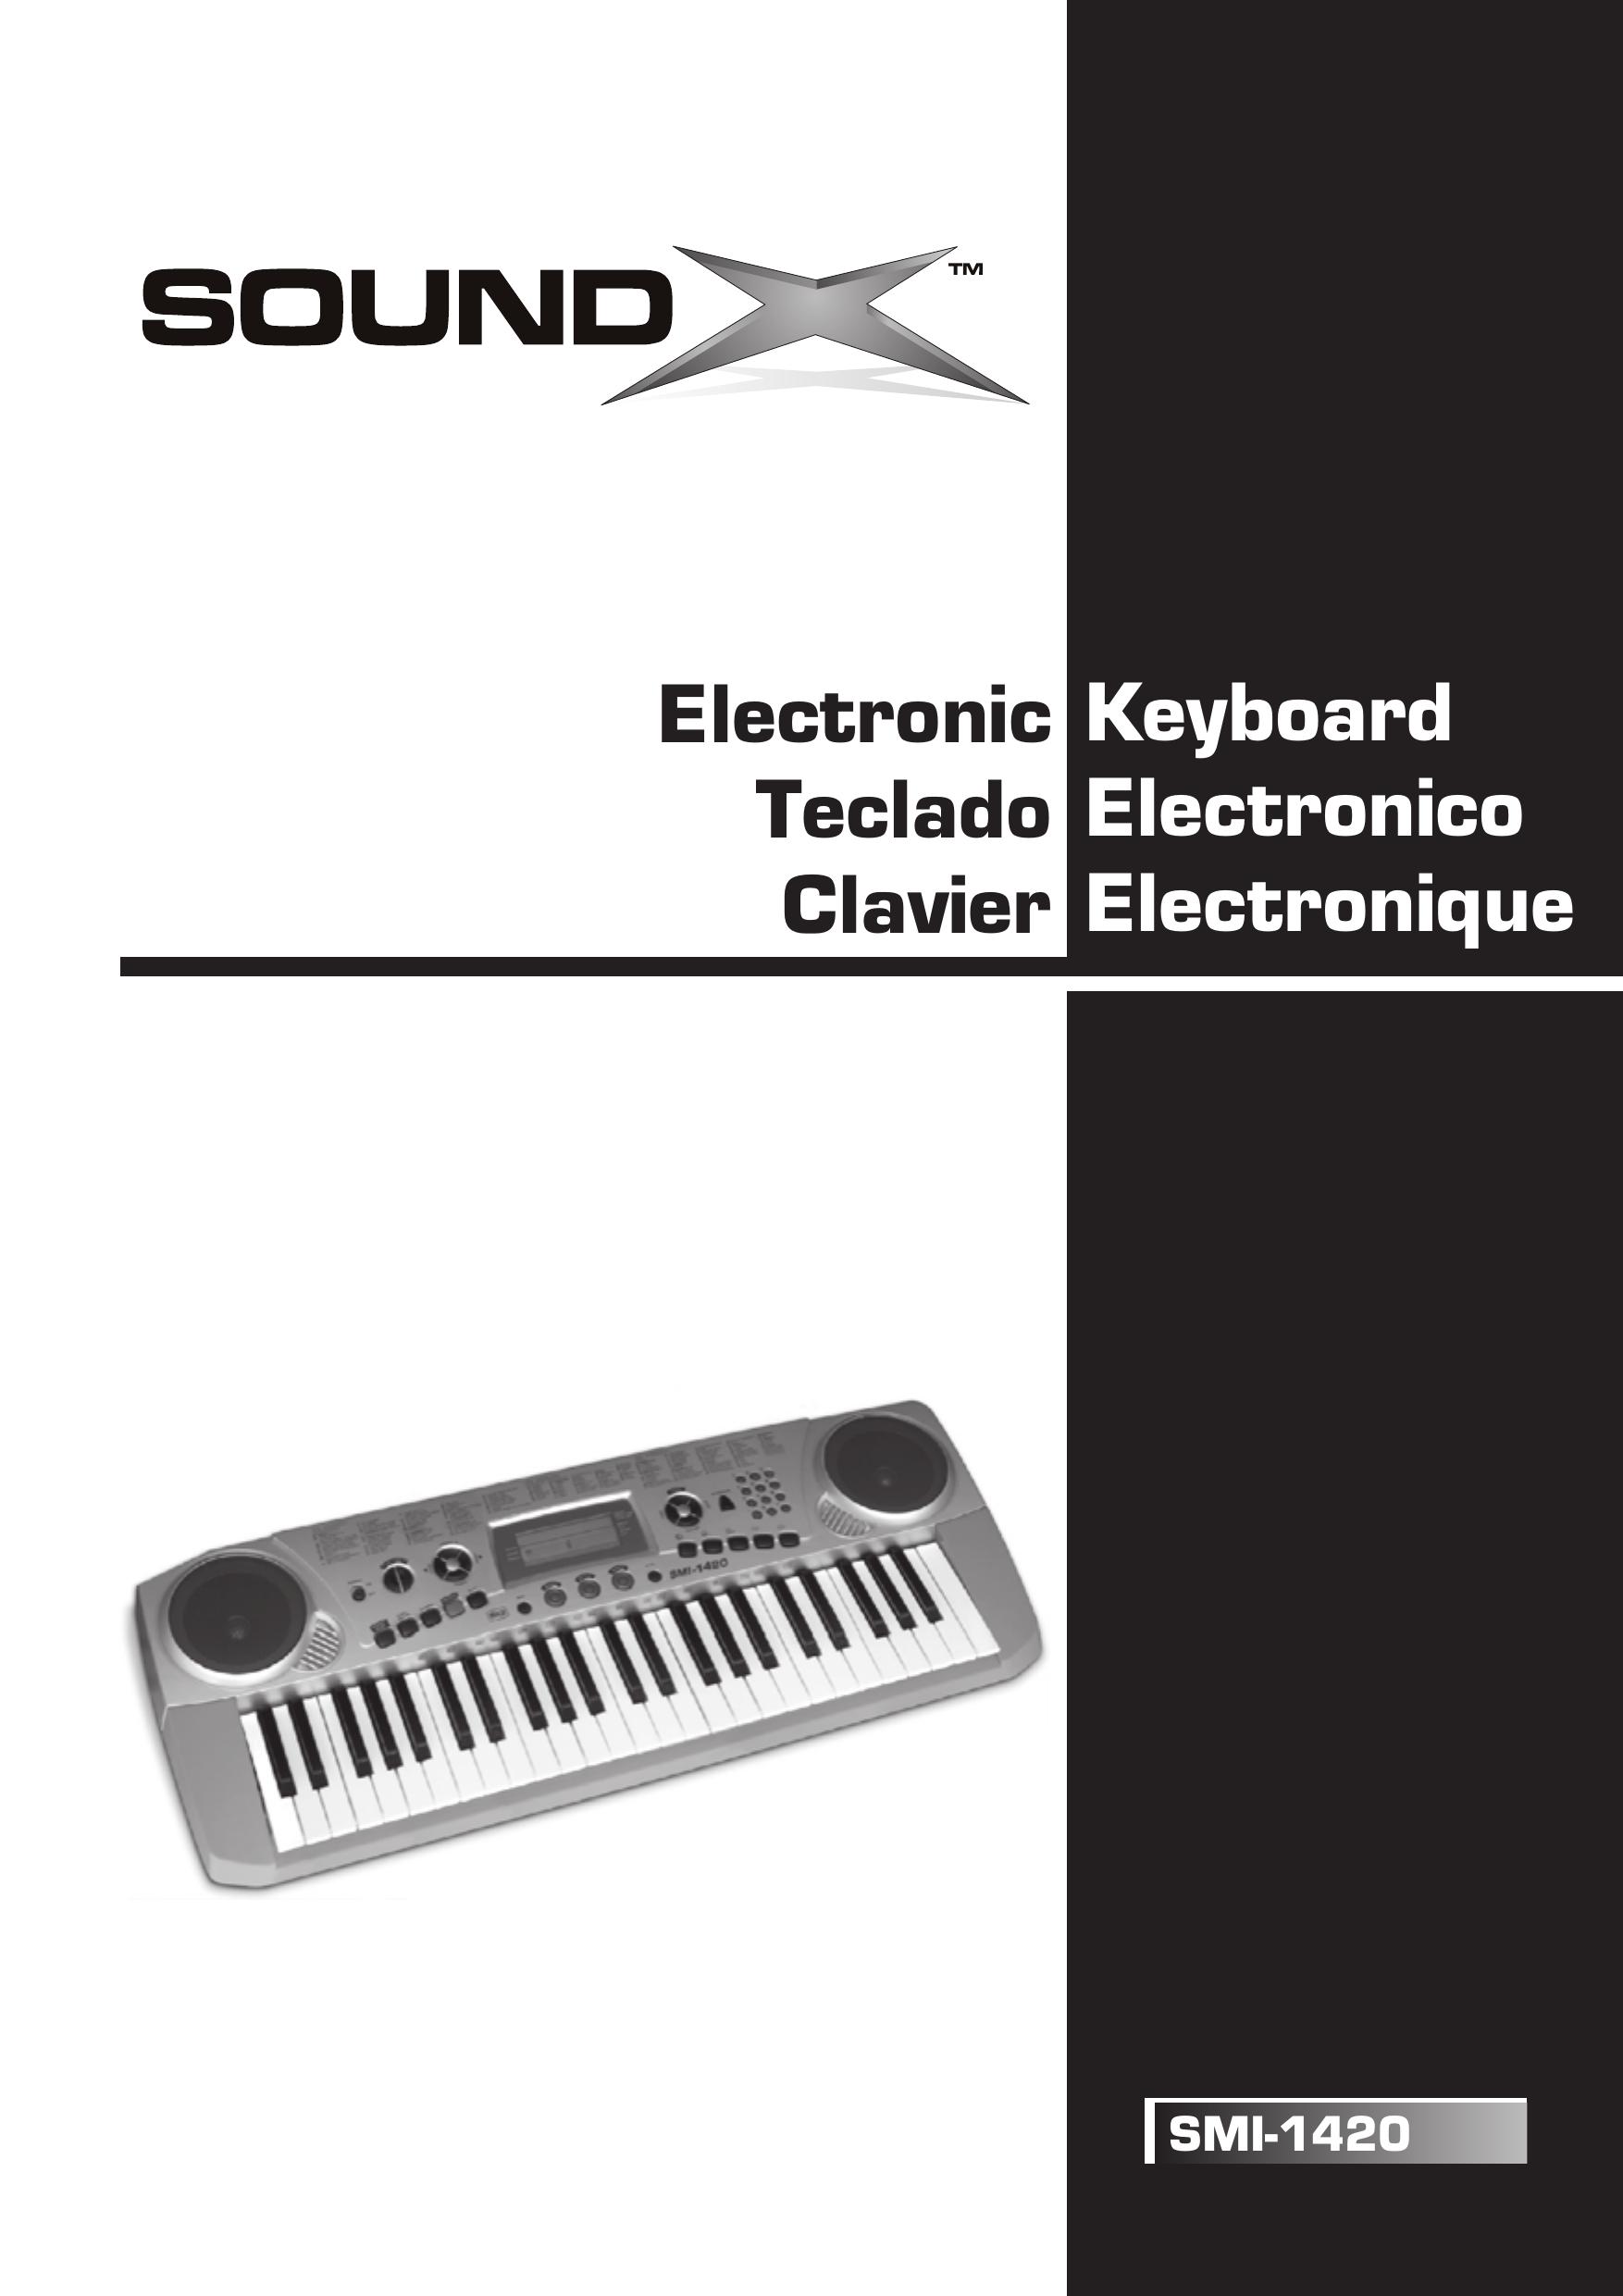 The Singing Machine SMI-1420 Electronic Keyboard User Manual